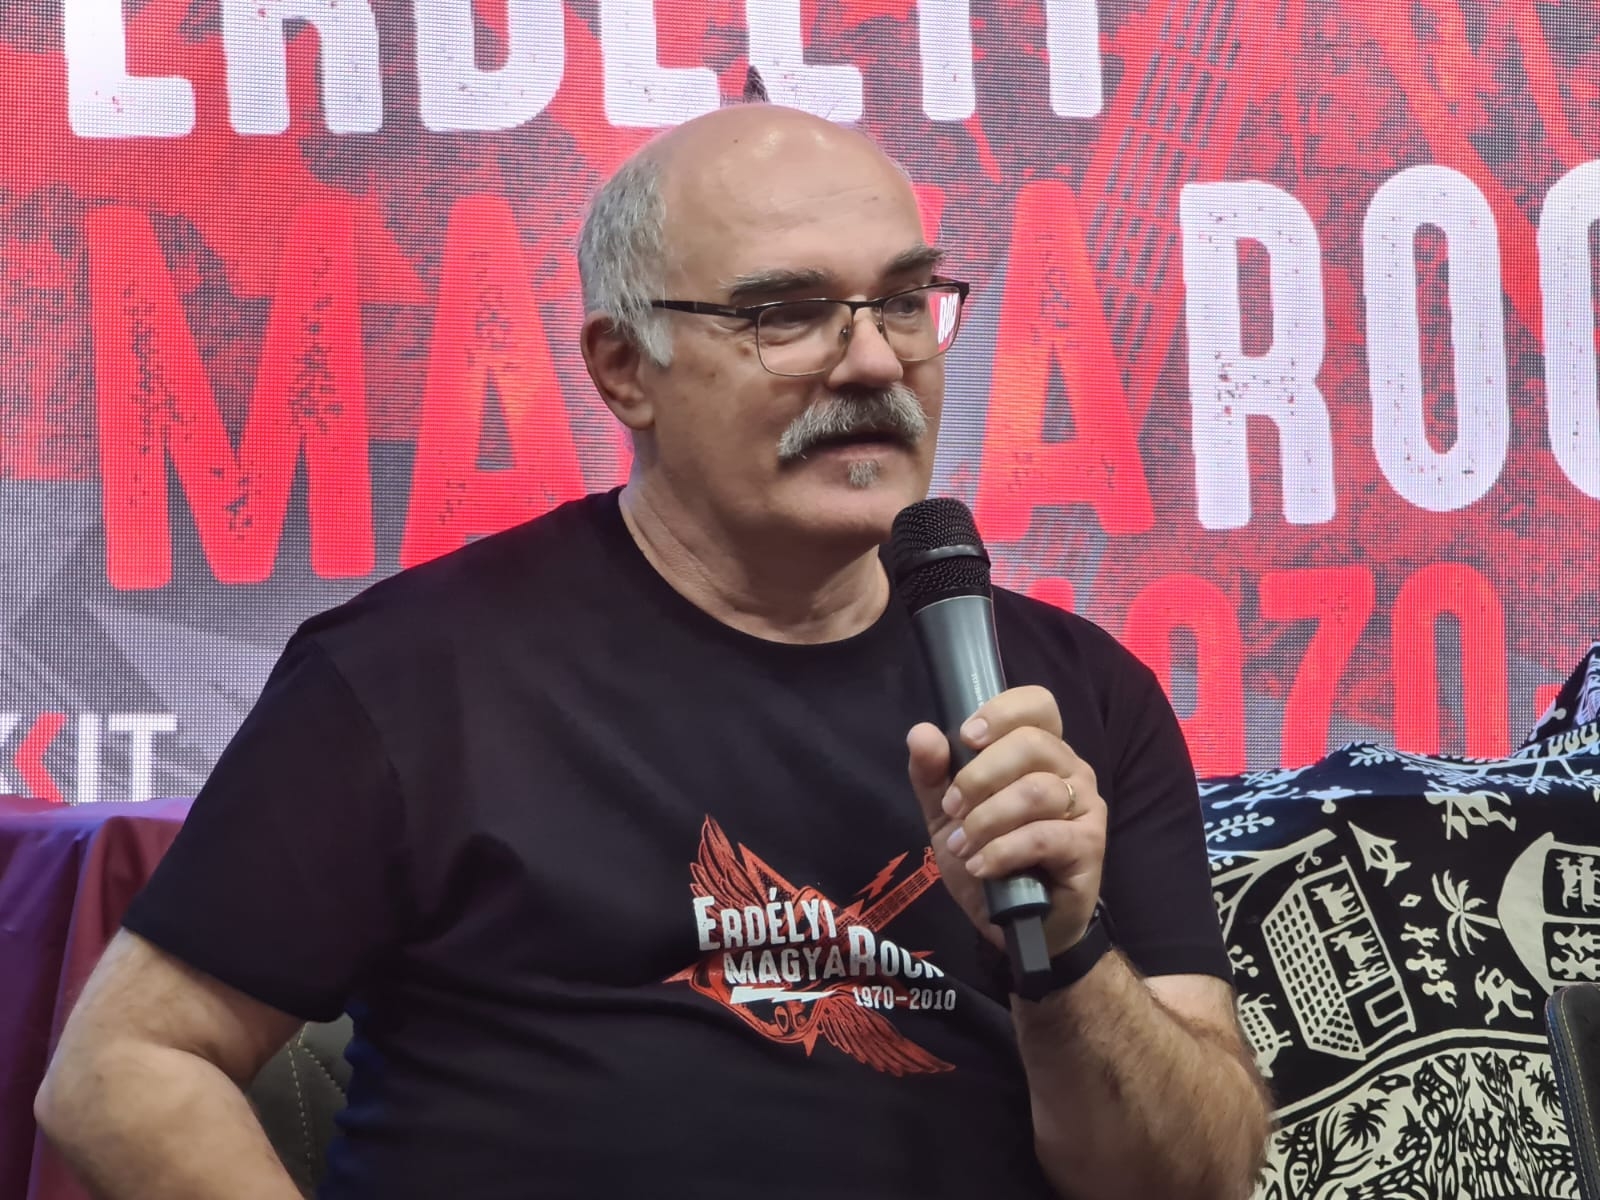 90 zenekar, hazai rocktörténet – az Erdélyi magyaRock csíkszeredai könyvbemutatója